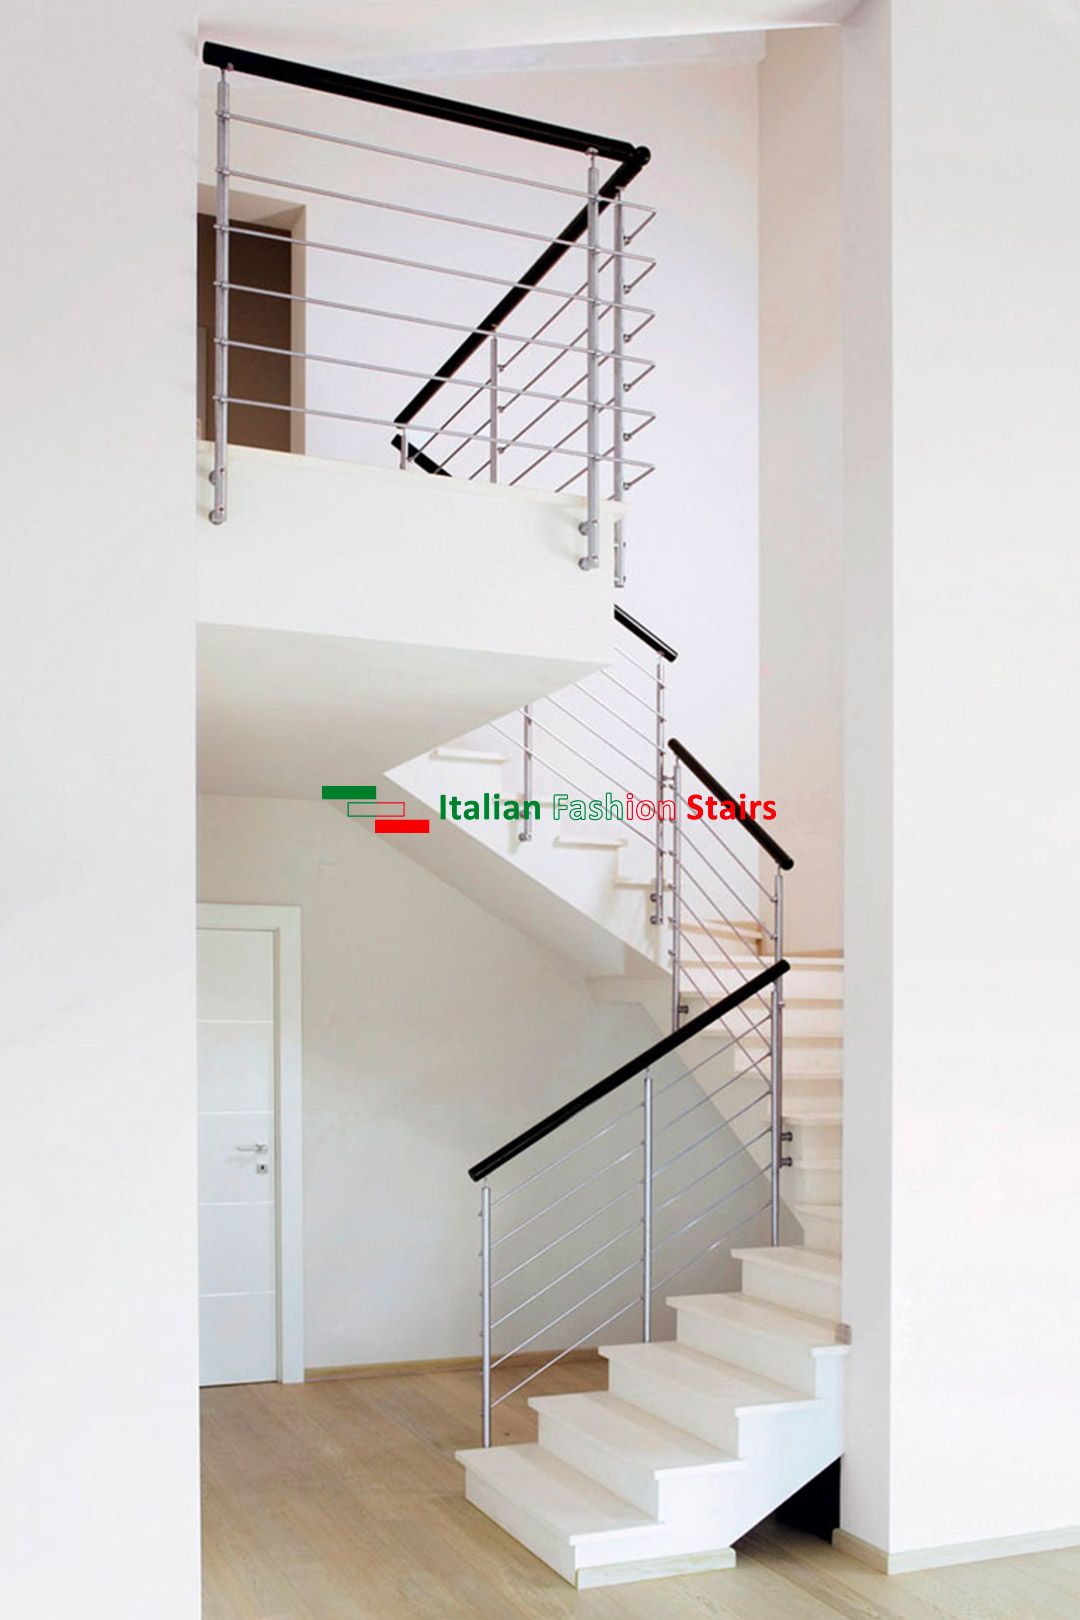 Silver inox - garde-corps - italian fashion stairs - cartactérisé par poteaux et main courante ronds tubulaires, six lisses horizontales_0